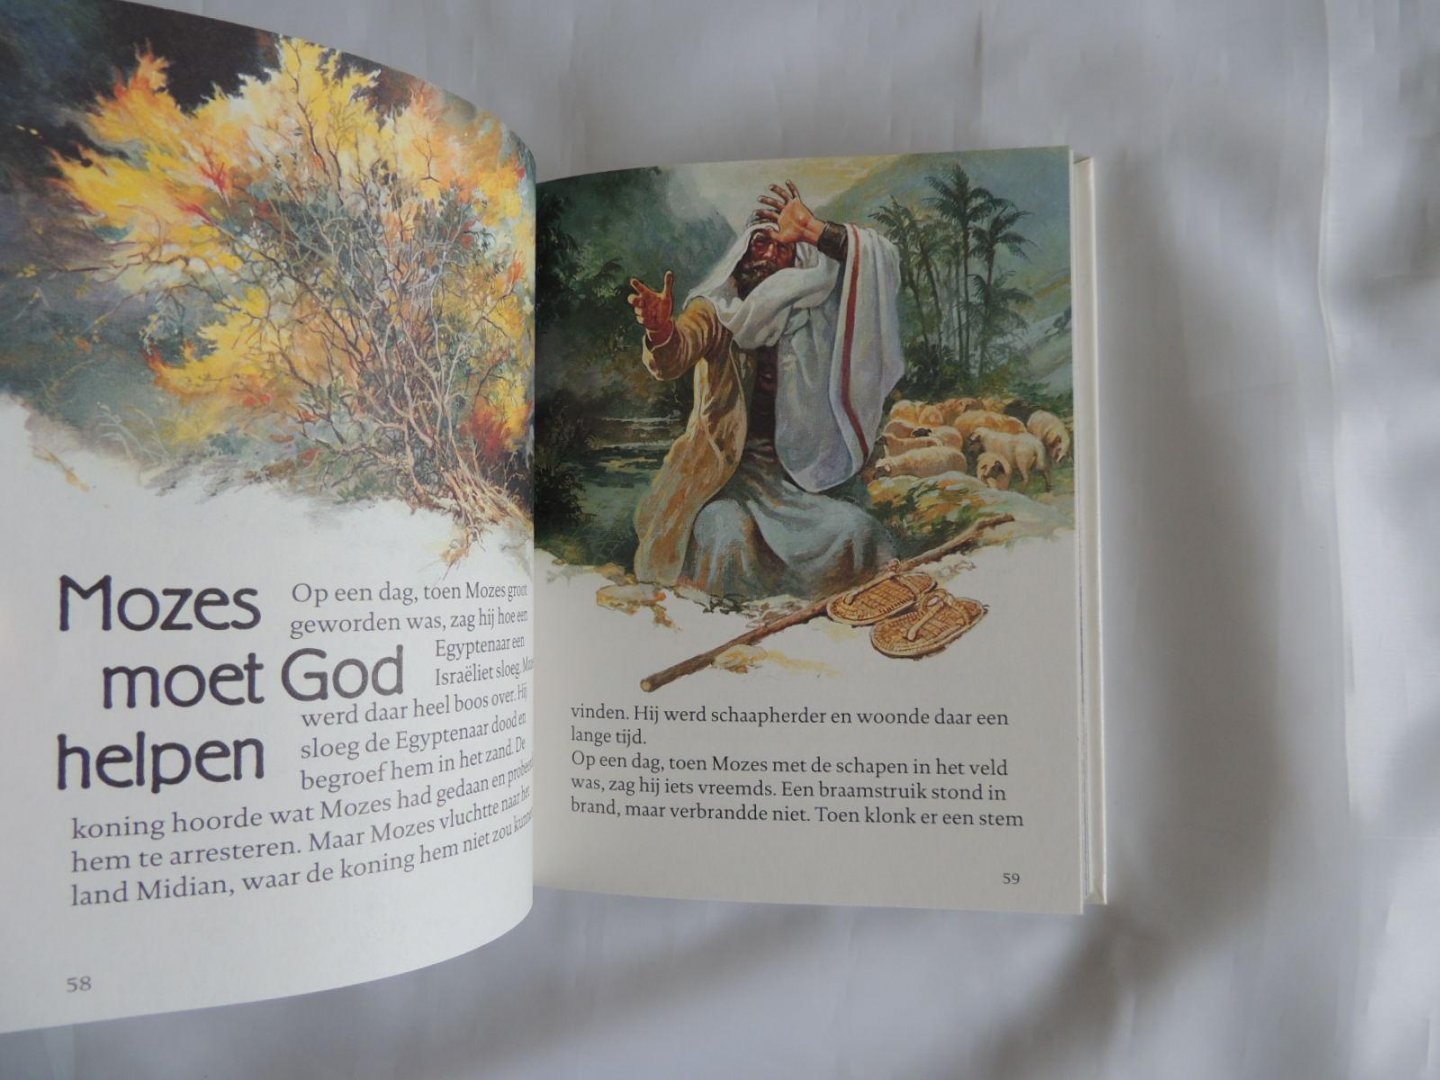 Kenneth N. Taylor / WESTEN A VAN - Voorleesbijbel met illustraties VOORLEES BIJBEL